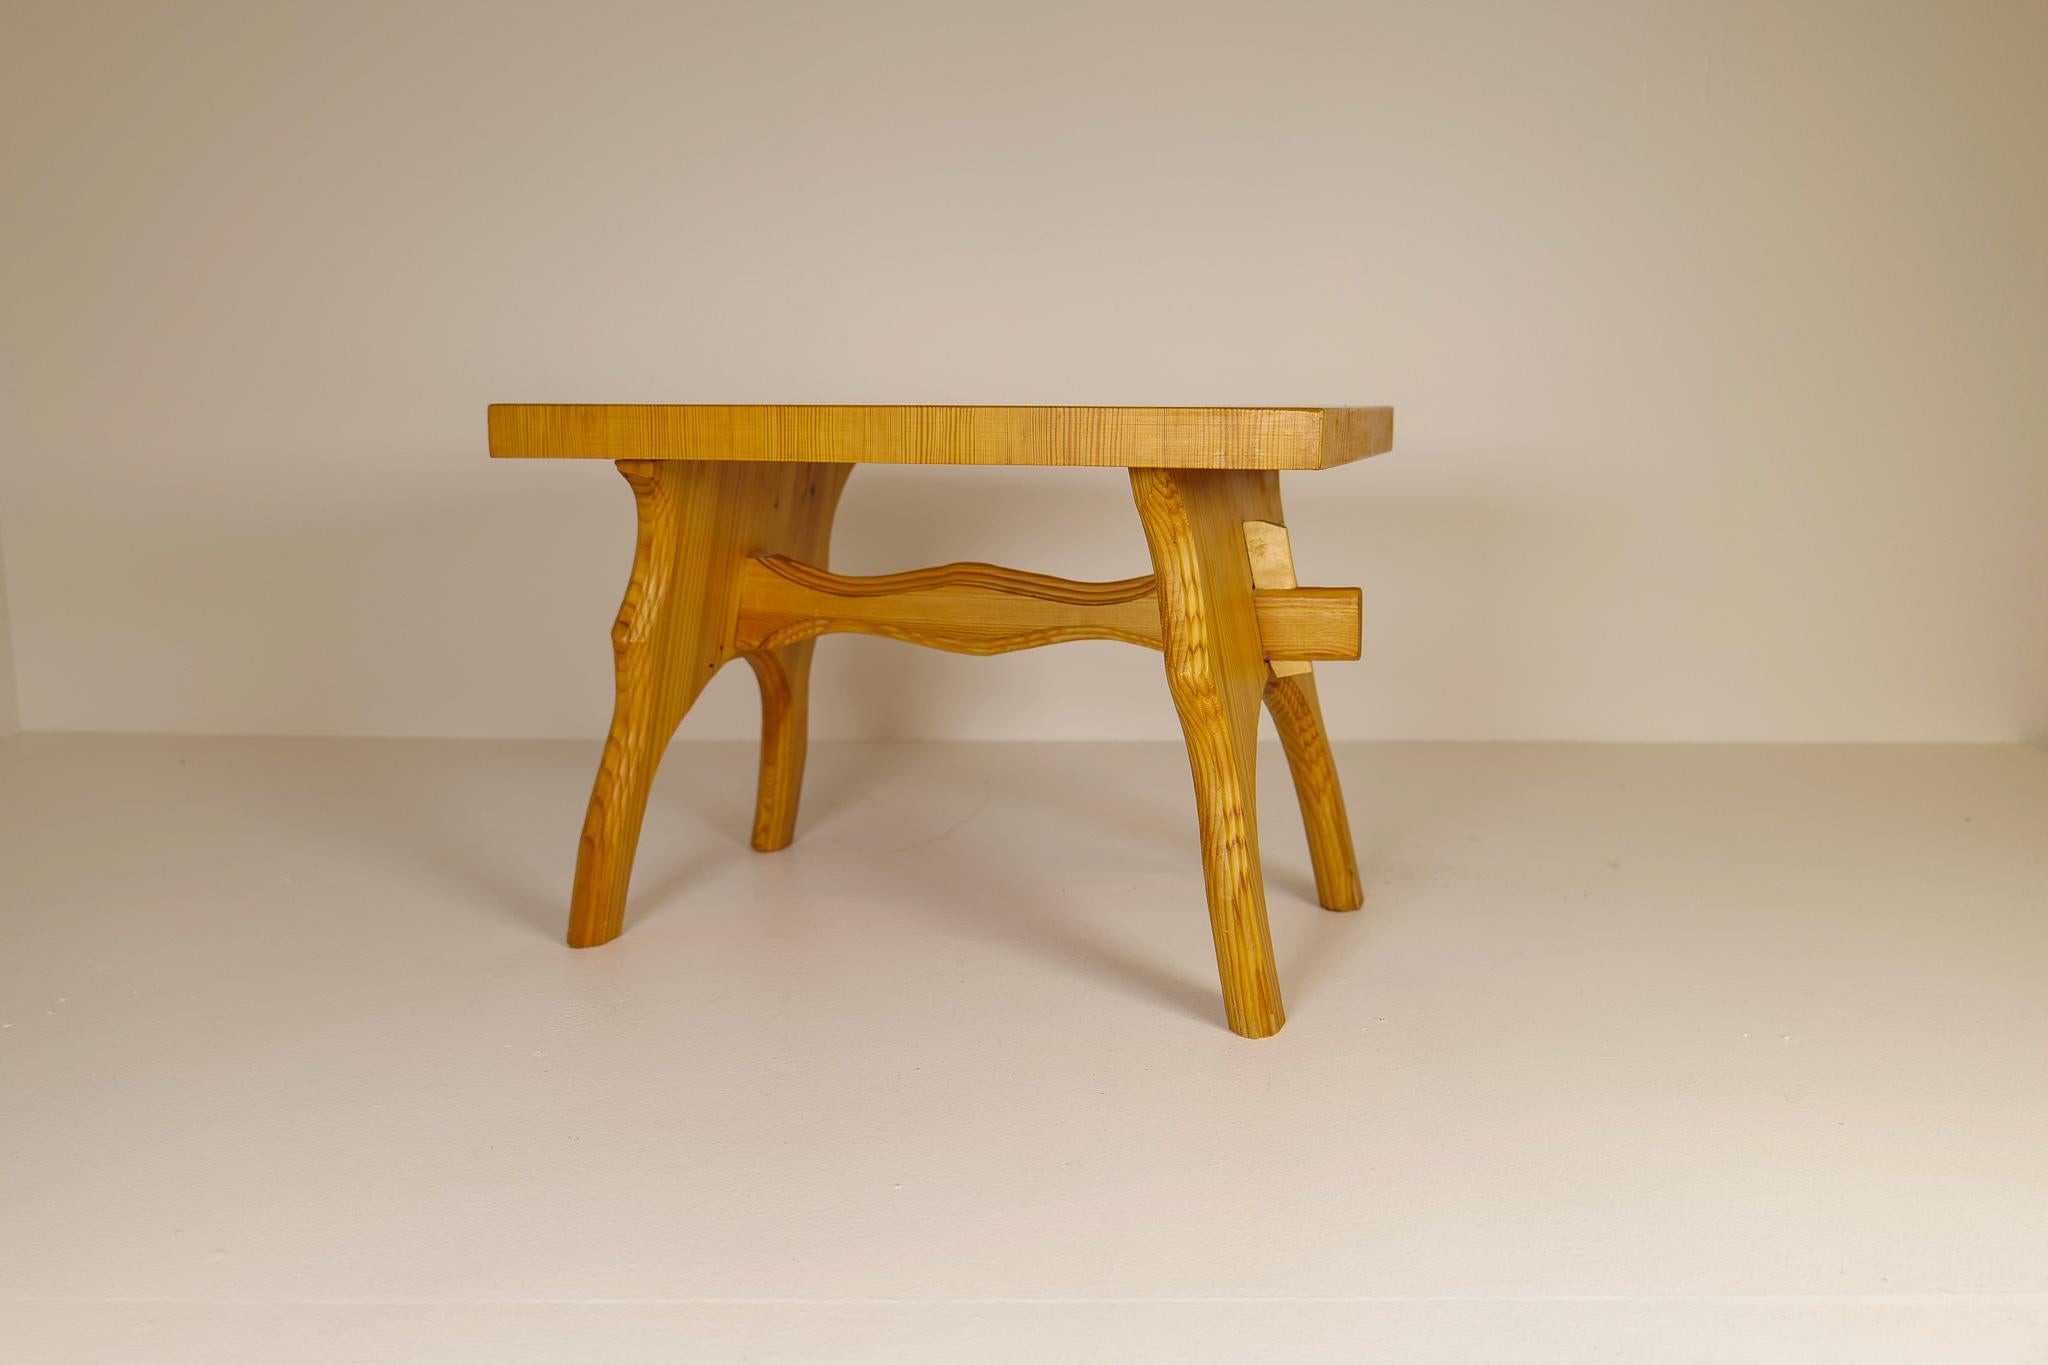 Un tabouret en pin produit en Suède dans les années 1970.
Ce tabouret est un bon exemple de l'artisanat naïf avec le stile minimaliste connu des meubles scandinaves. Celui-ci a un dessus fait de grains assemblés pour donner un dessus